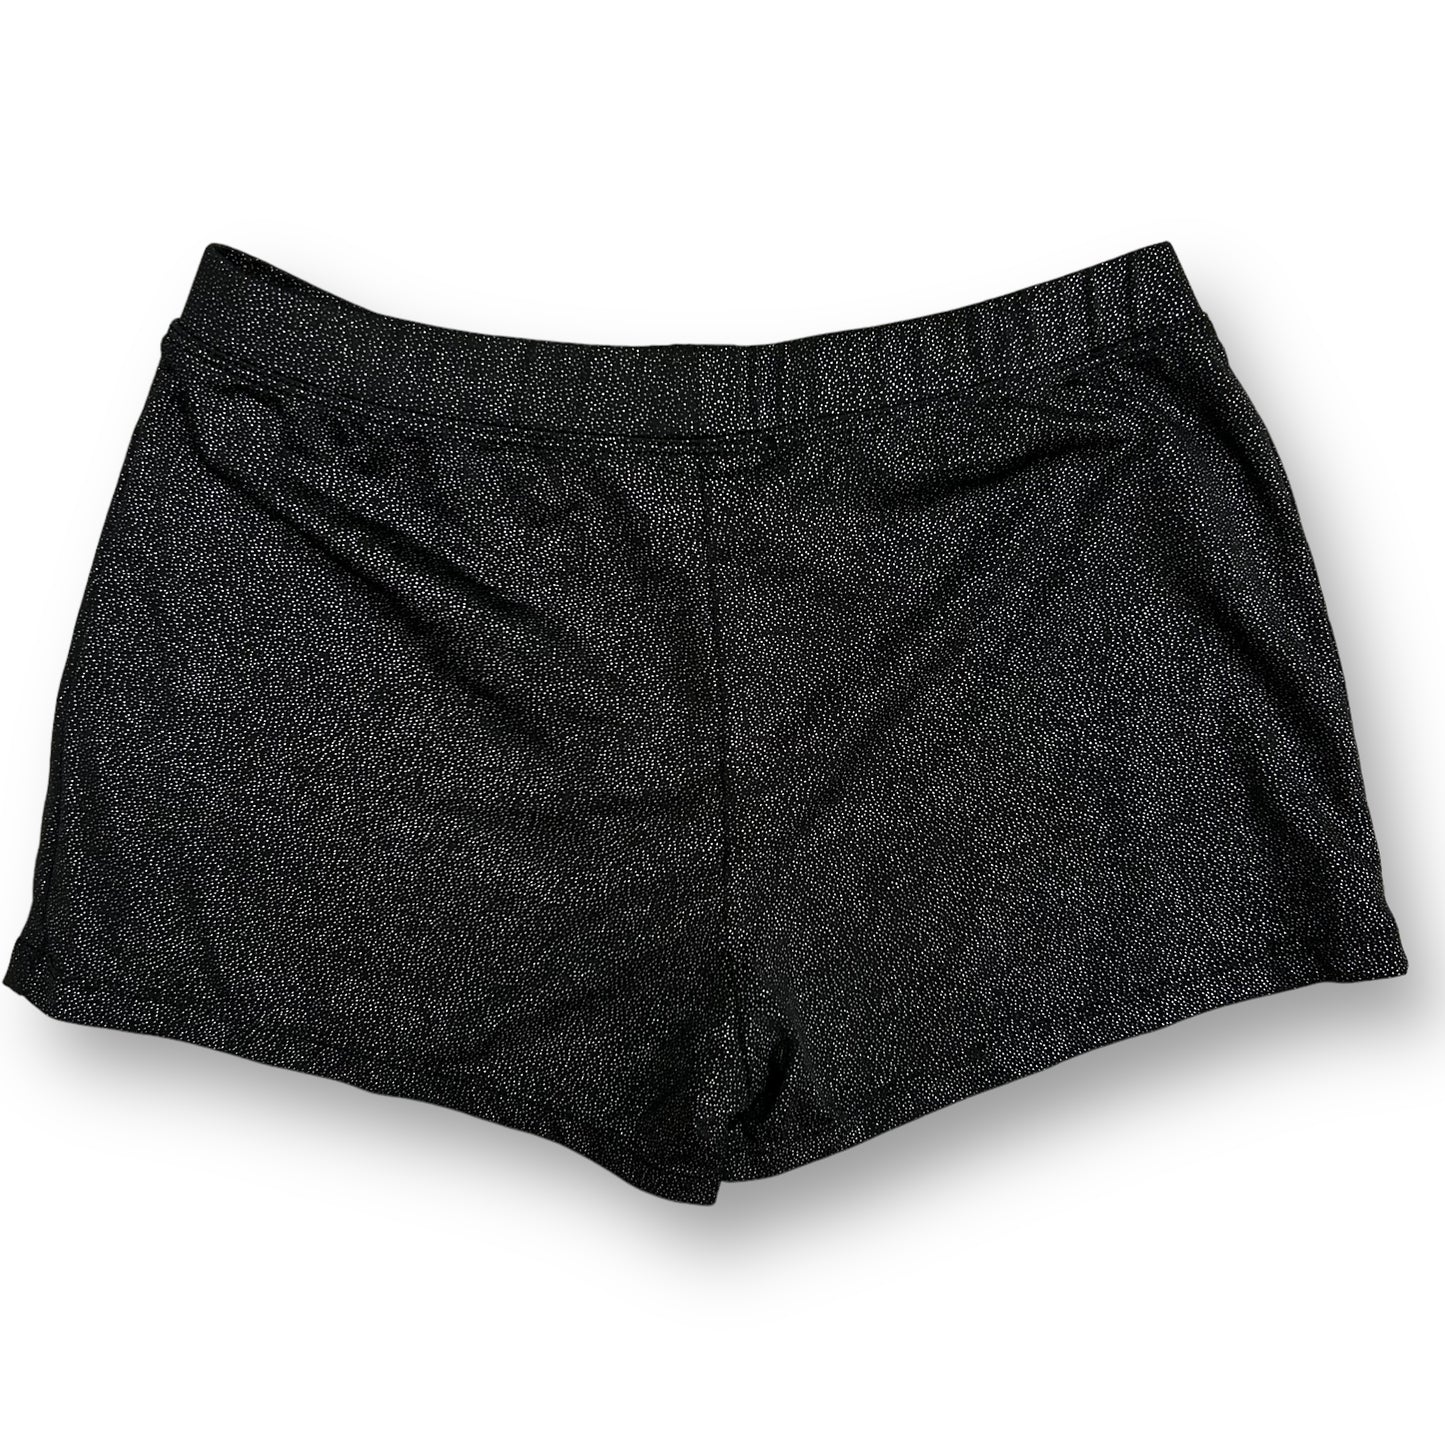 Girls Dancina Size 10 Black Shimmer Fitted Dance Shorts